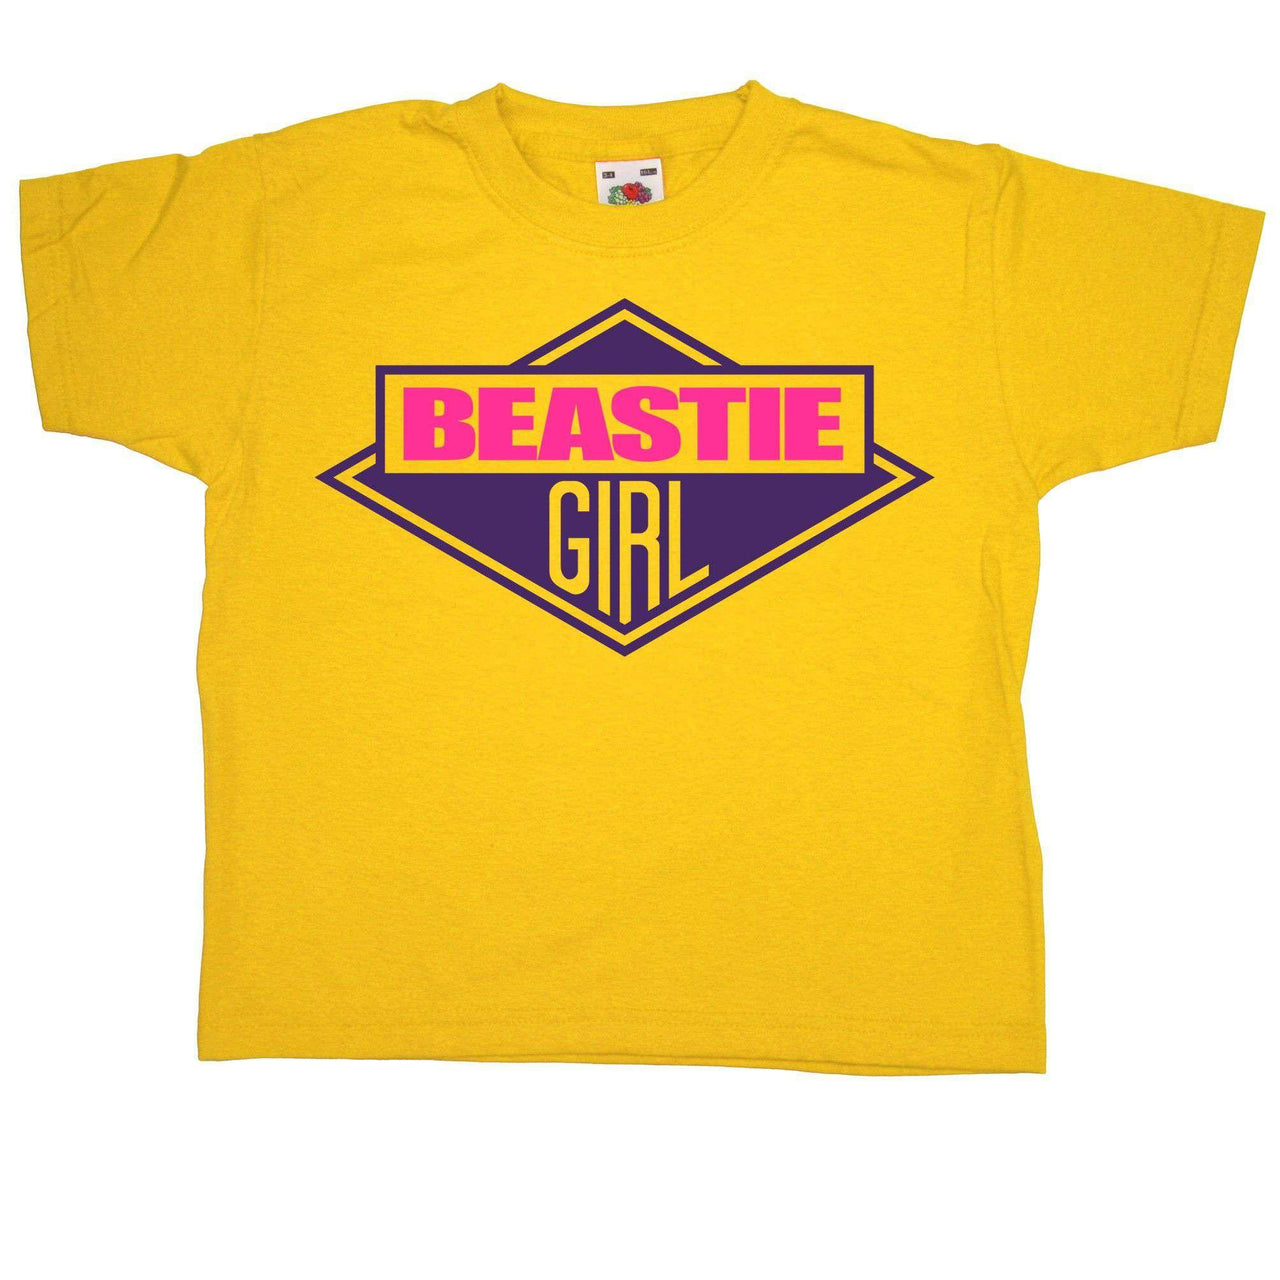 Beastie Girl Kids Graphic T-Shirt 8Ball